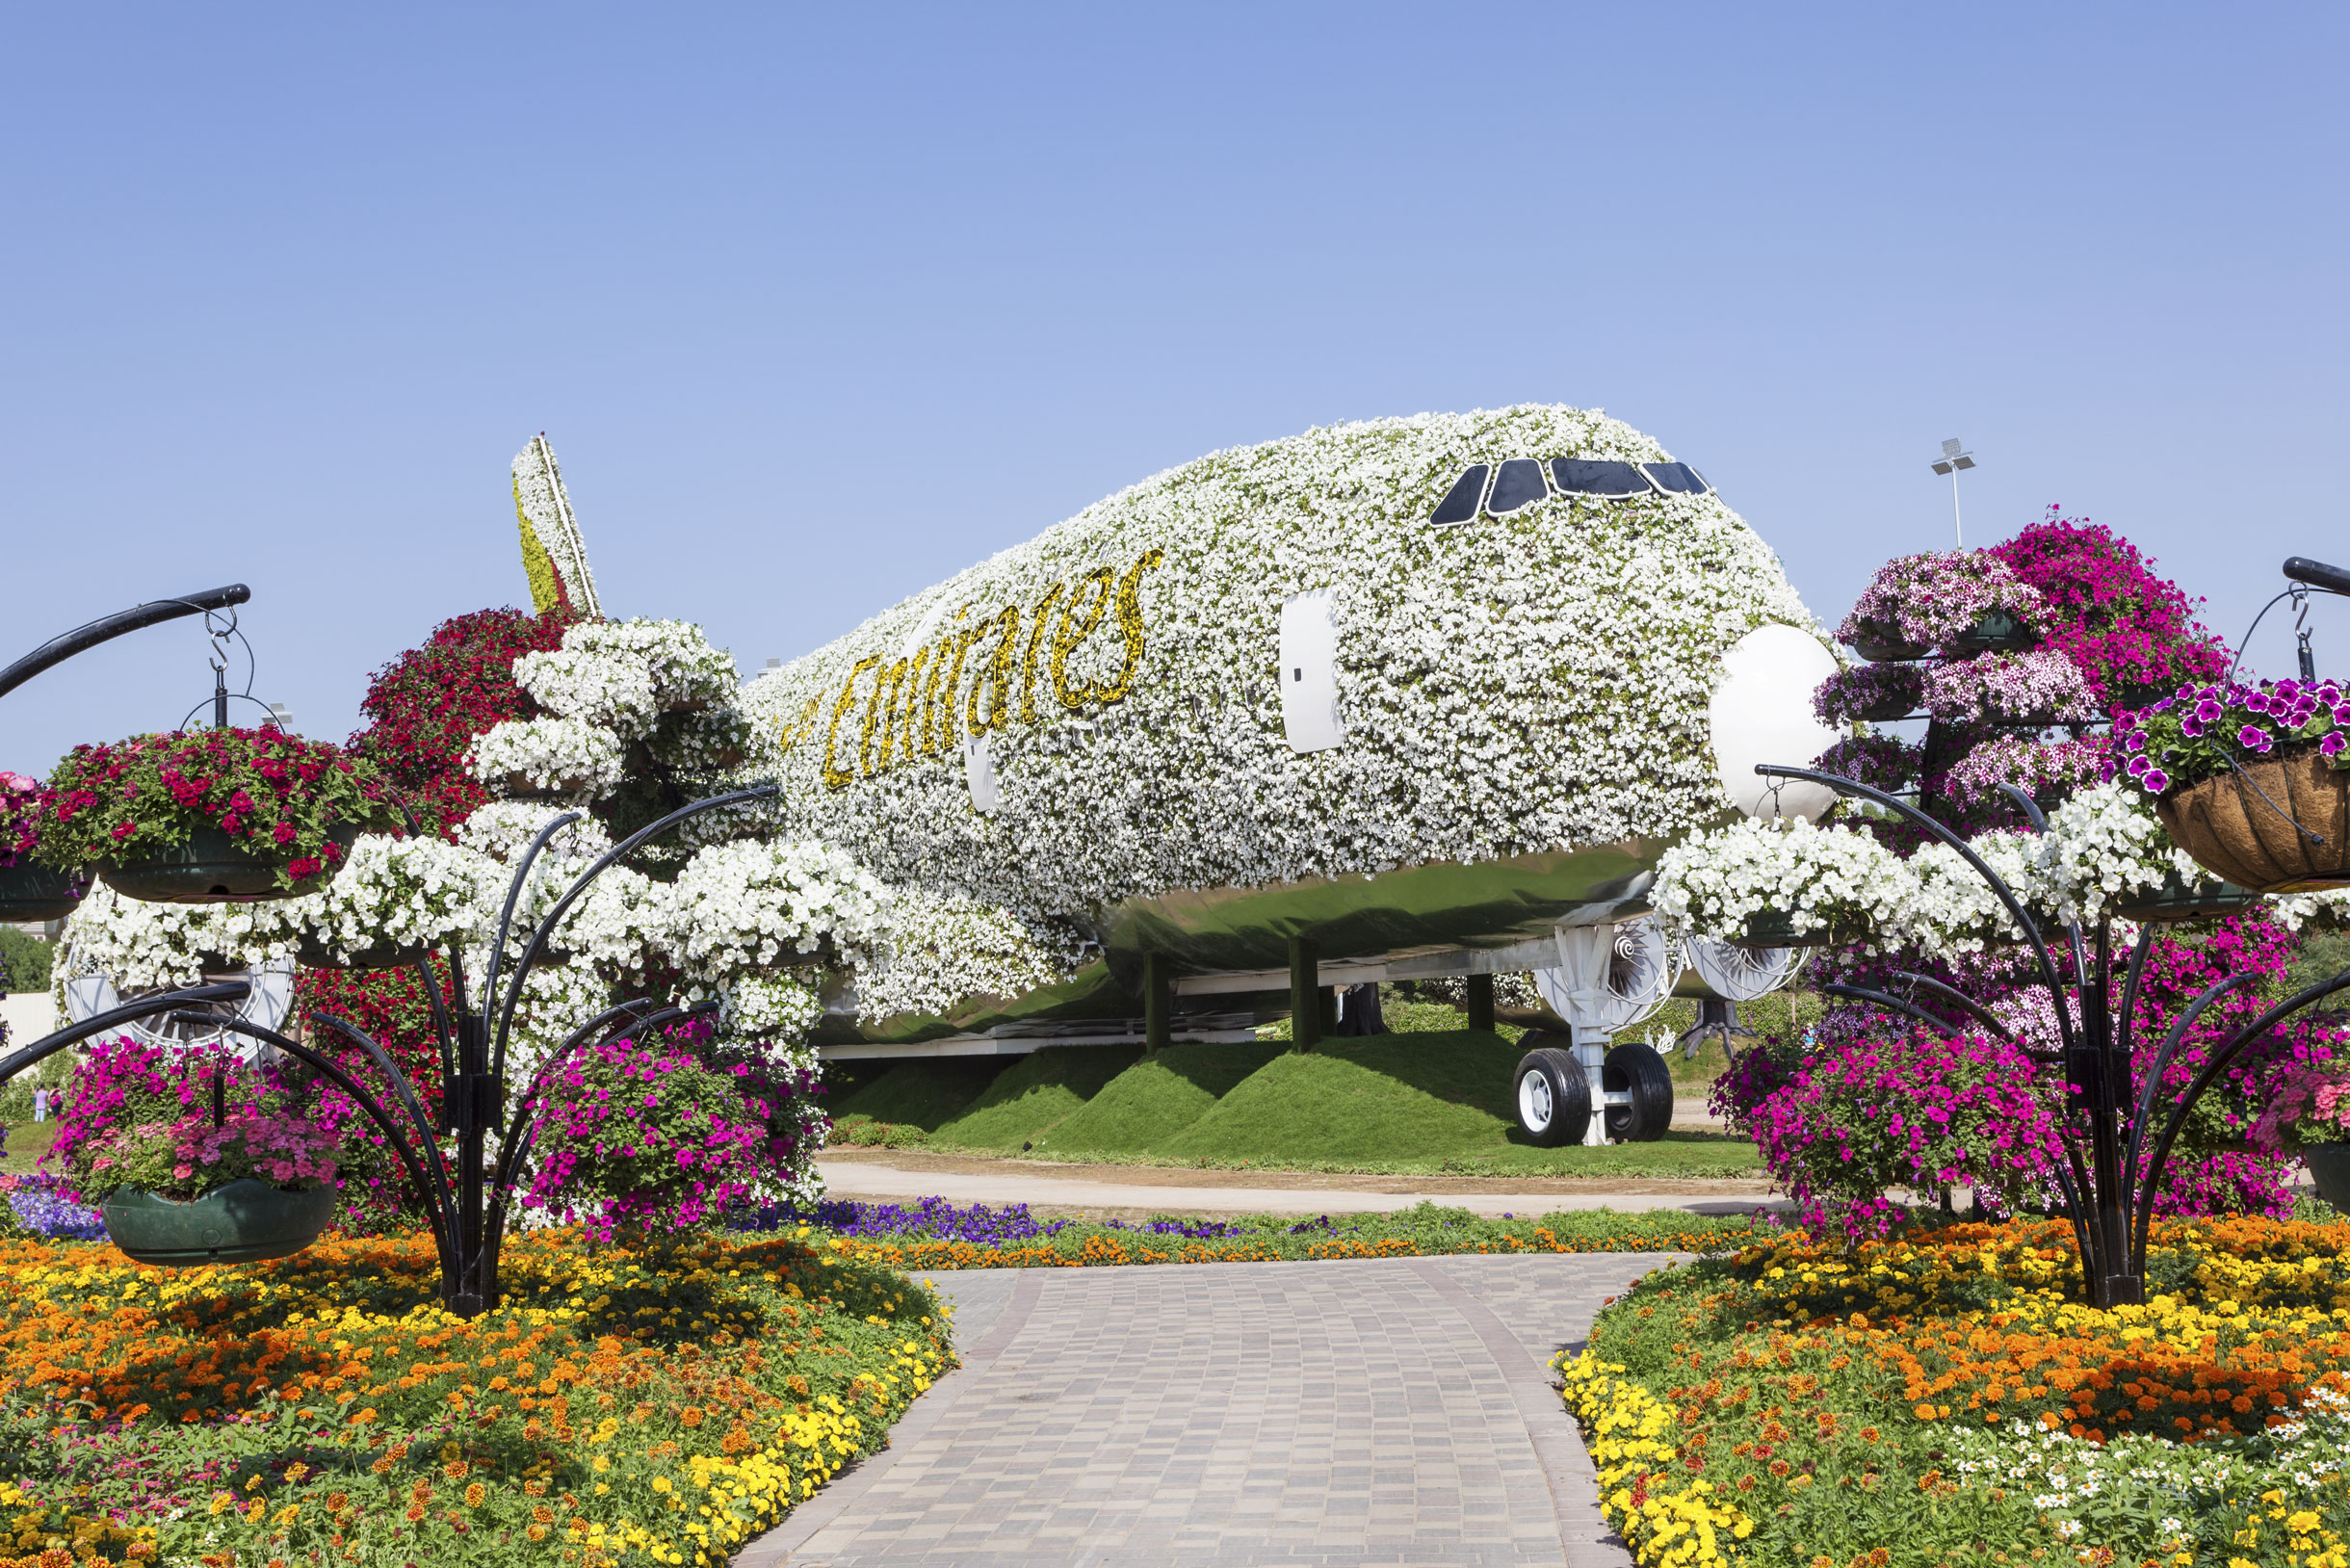 В парке стоит самолет Airbus A380, который полностью украсили цветами. Он попал в Книгу рекордов Гиннесса как крупнейшее цветочное сооружение. Фото: Philip Lange / Shutterstock